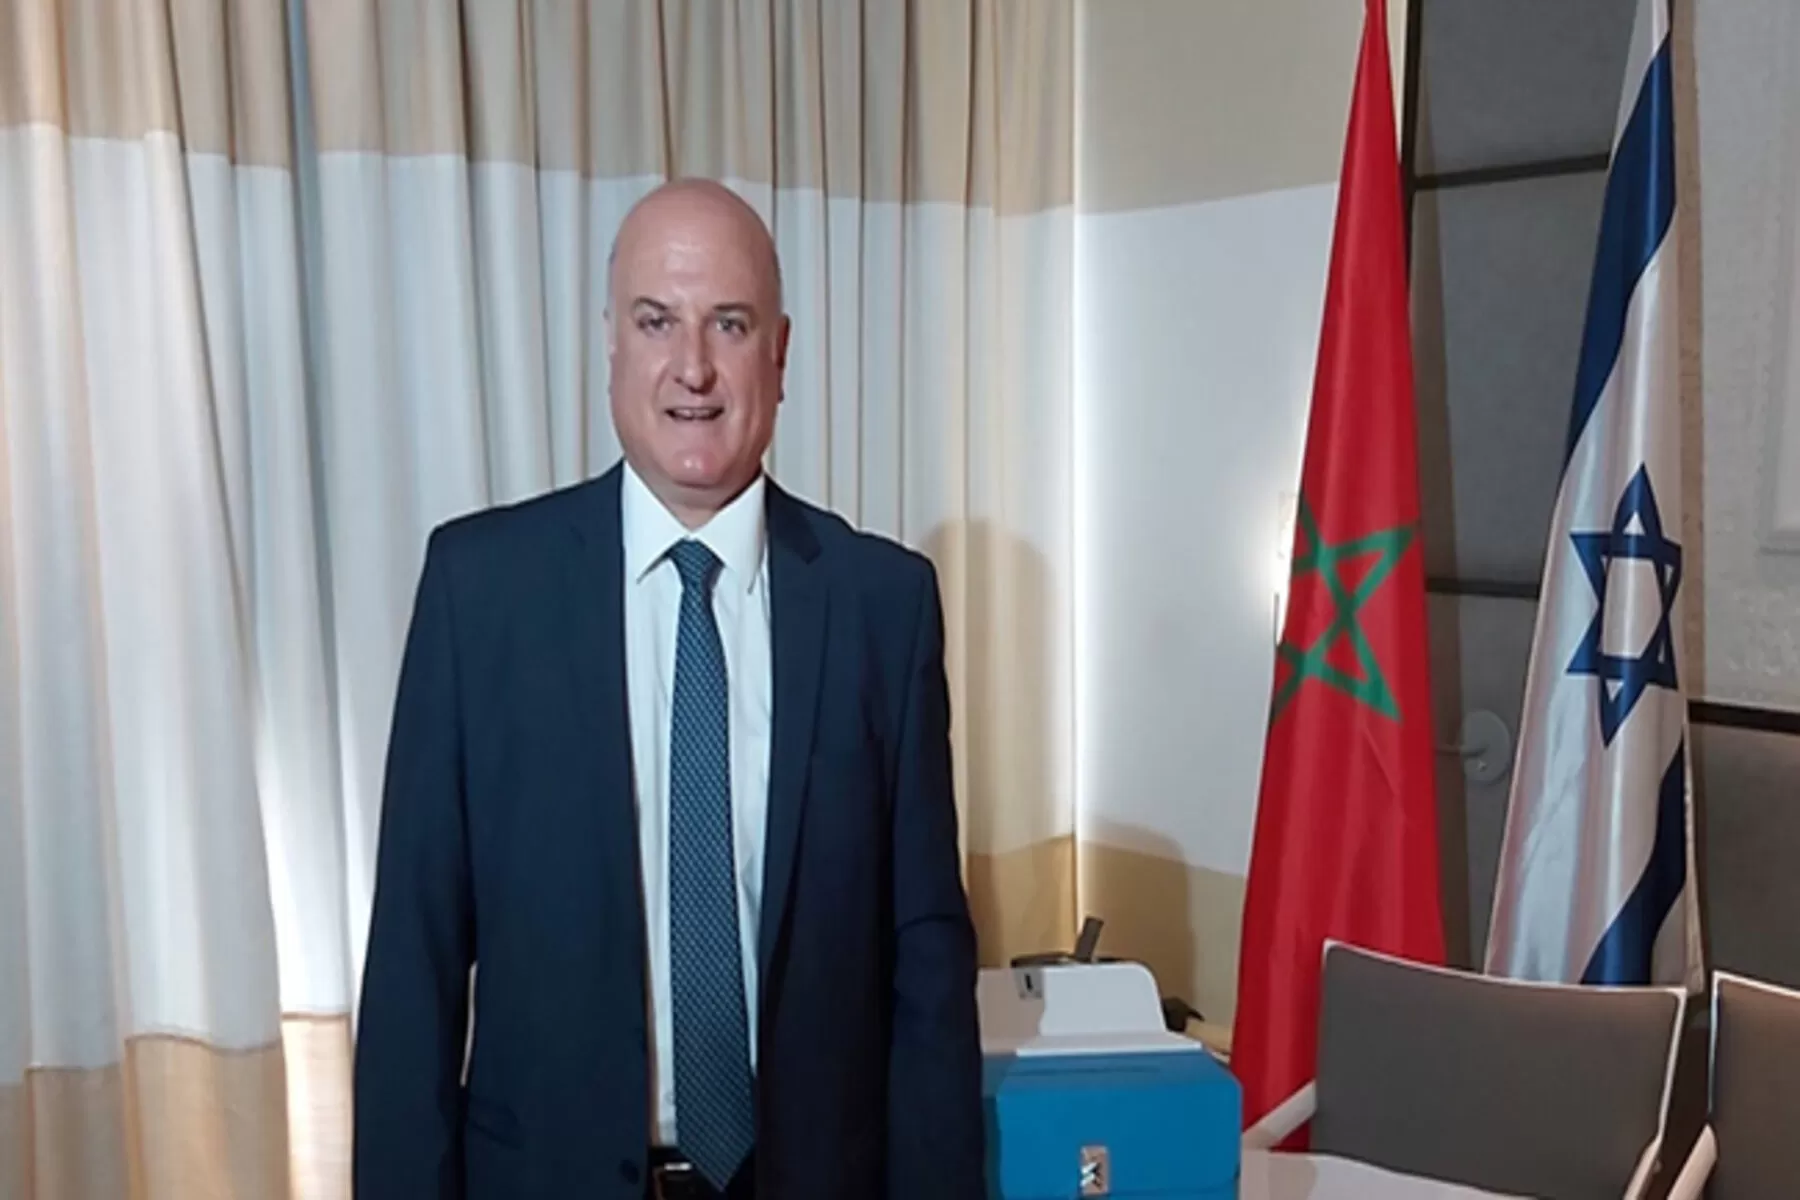 وسائل إعلام ذكر أن ديفيد غوفرين سفير إسرائيل لدى المغرب بات ممنوعا من مغادرة مقر إقامته